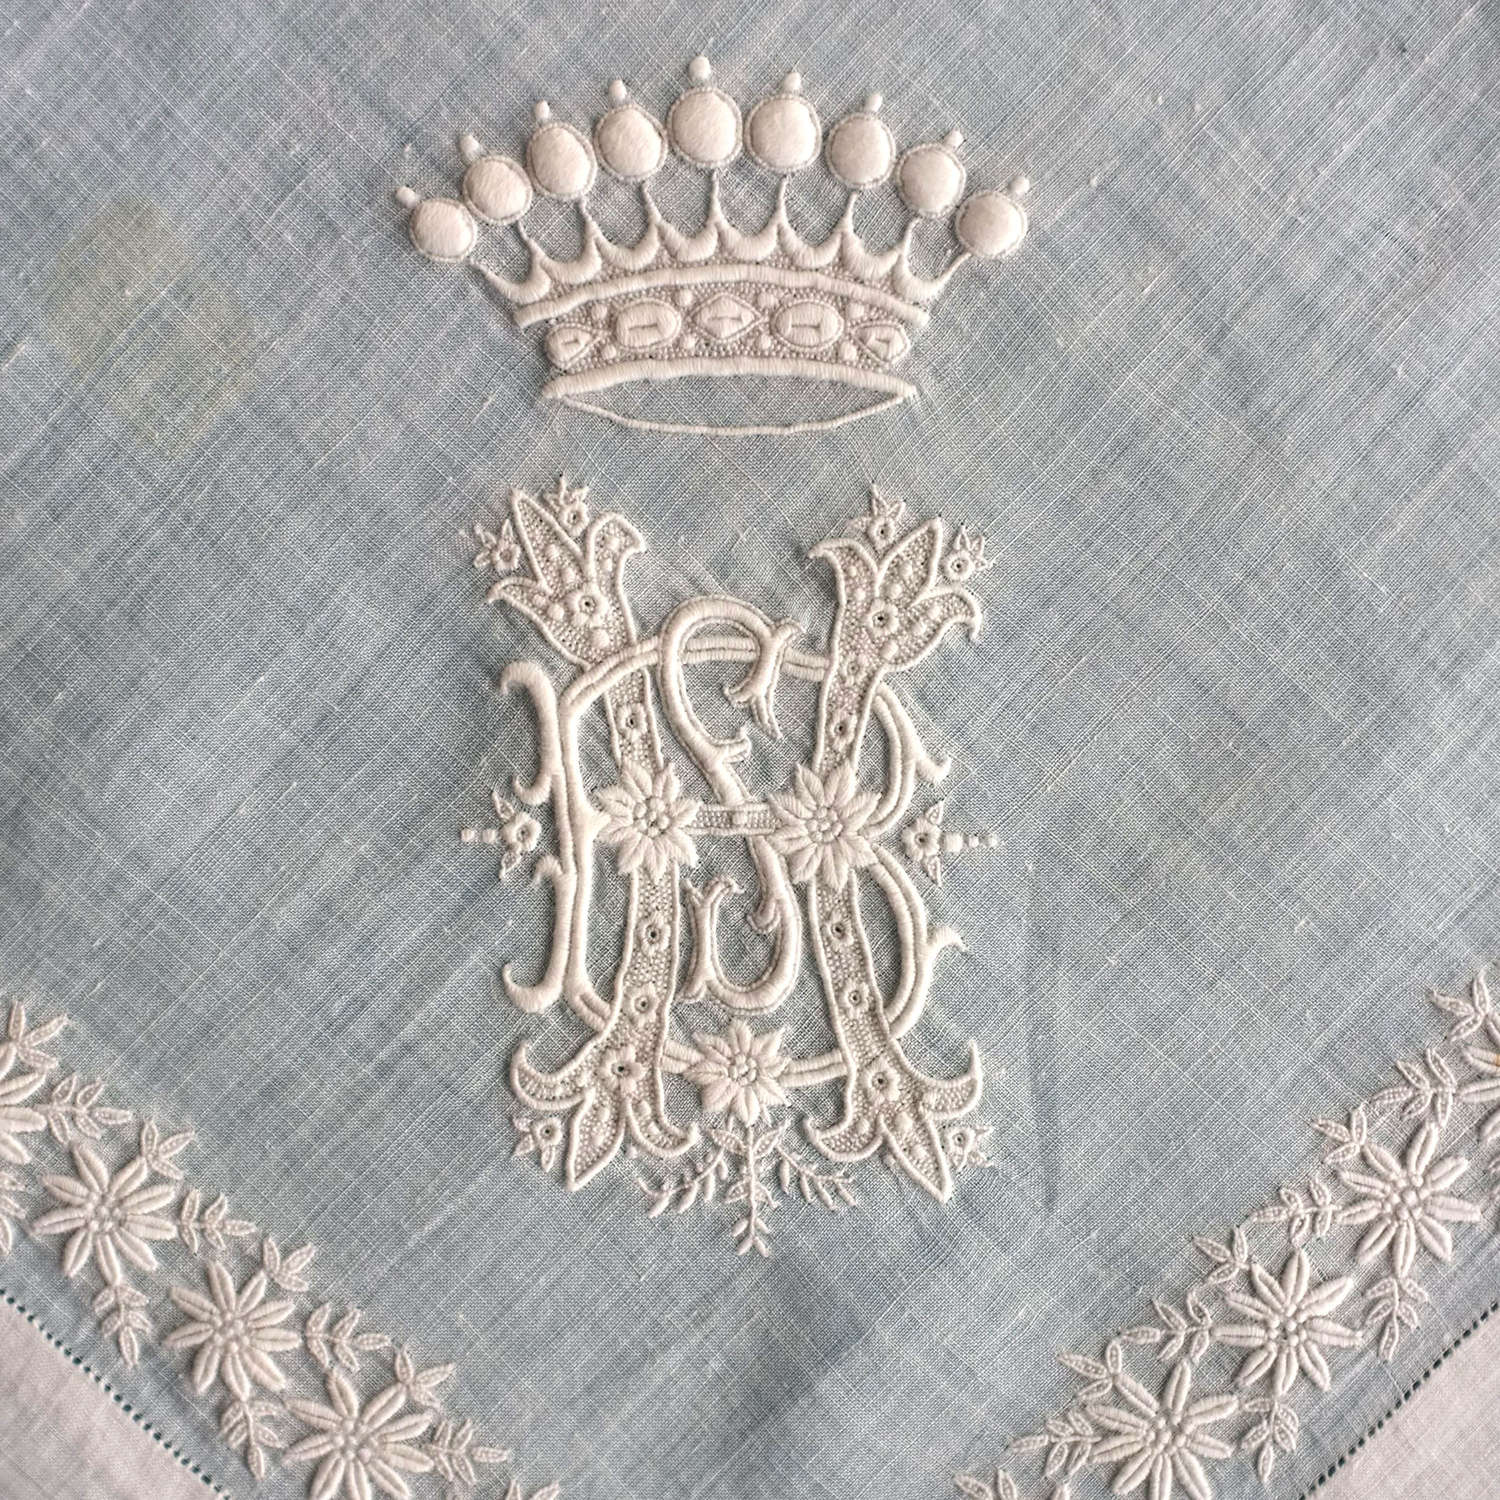 Antique Whitework Handkerchief With Coronet